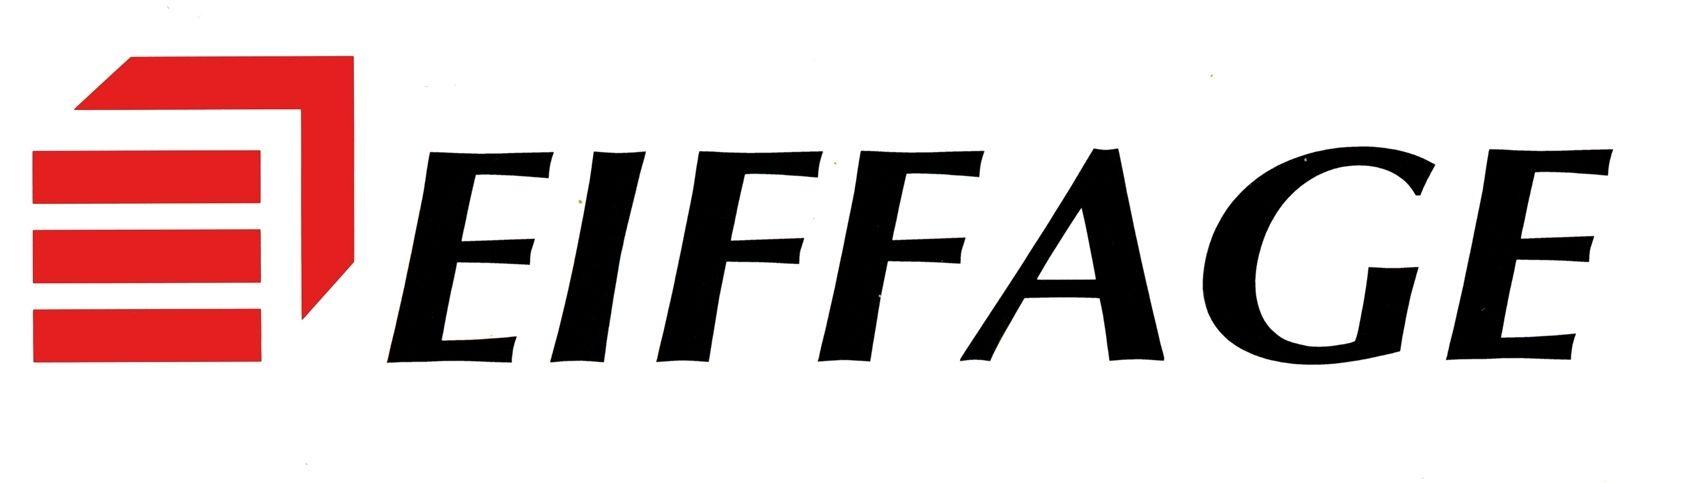 Eiffage Logo - logo-eiffage - Dronelis